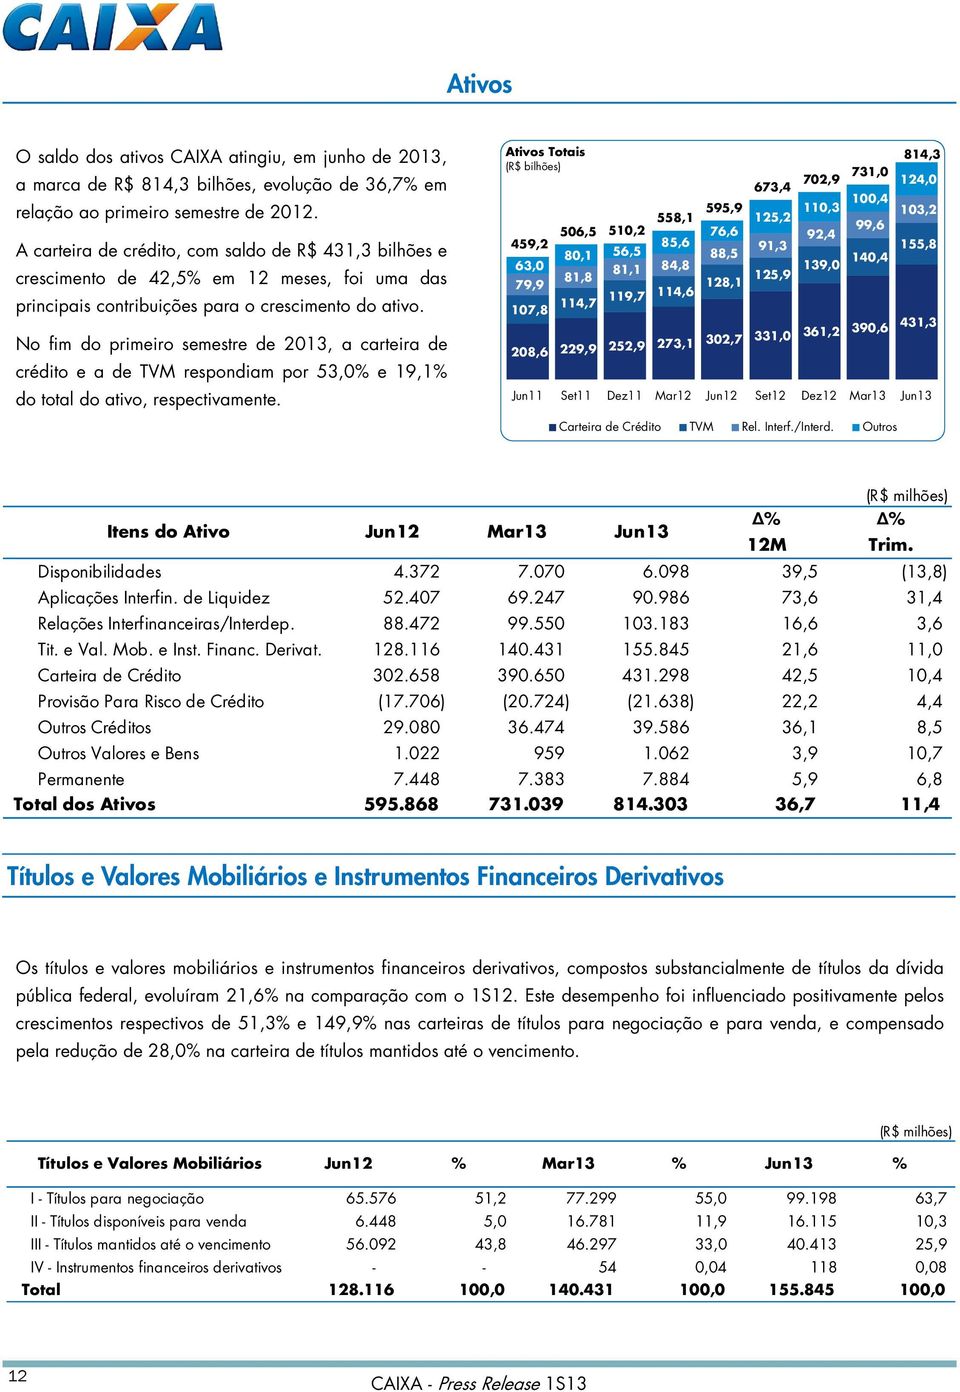 No fim do primeiro semestre de 2013, a carteira de crédito e a de TVM respondiam por 53,0% e 19,1% do total do ativo, respectivamente.